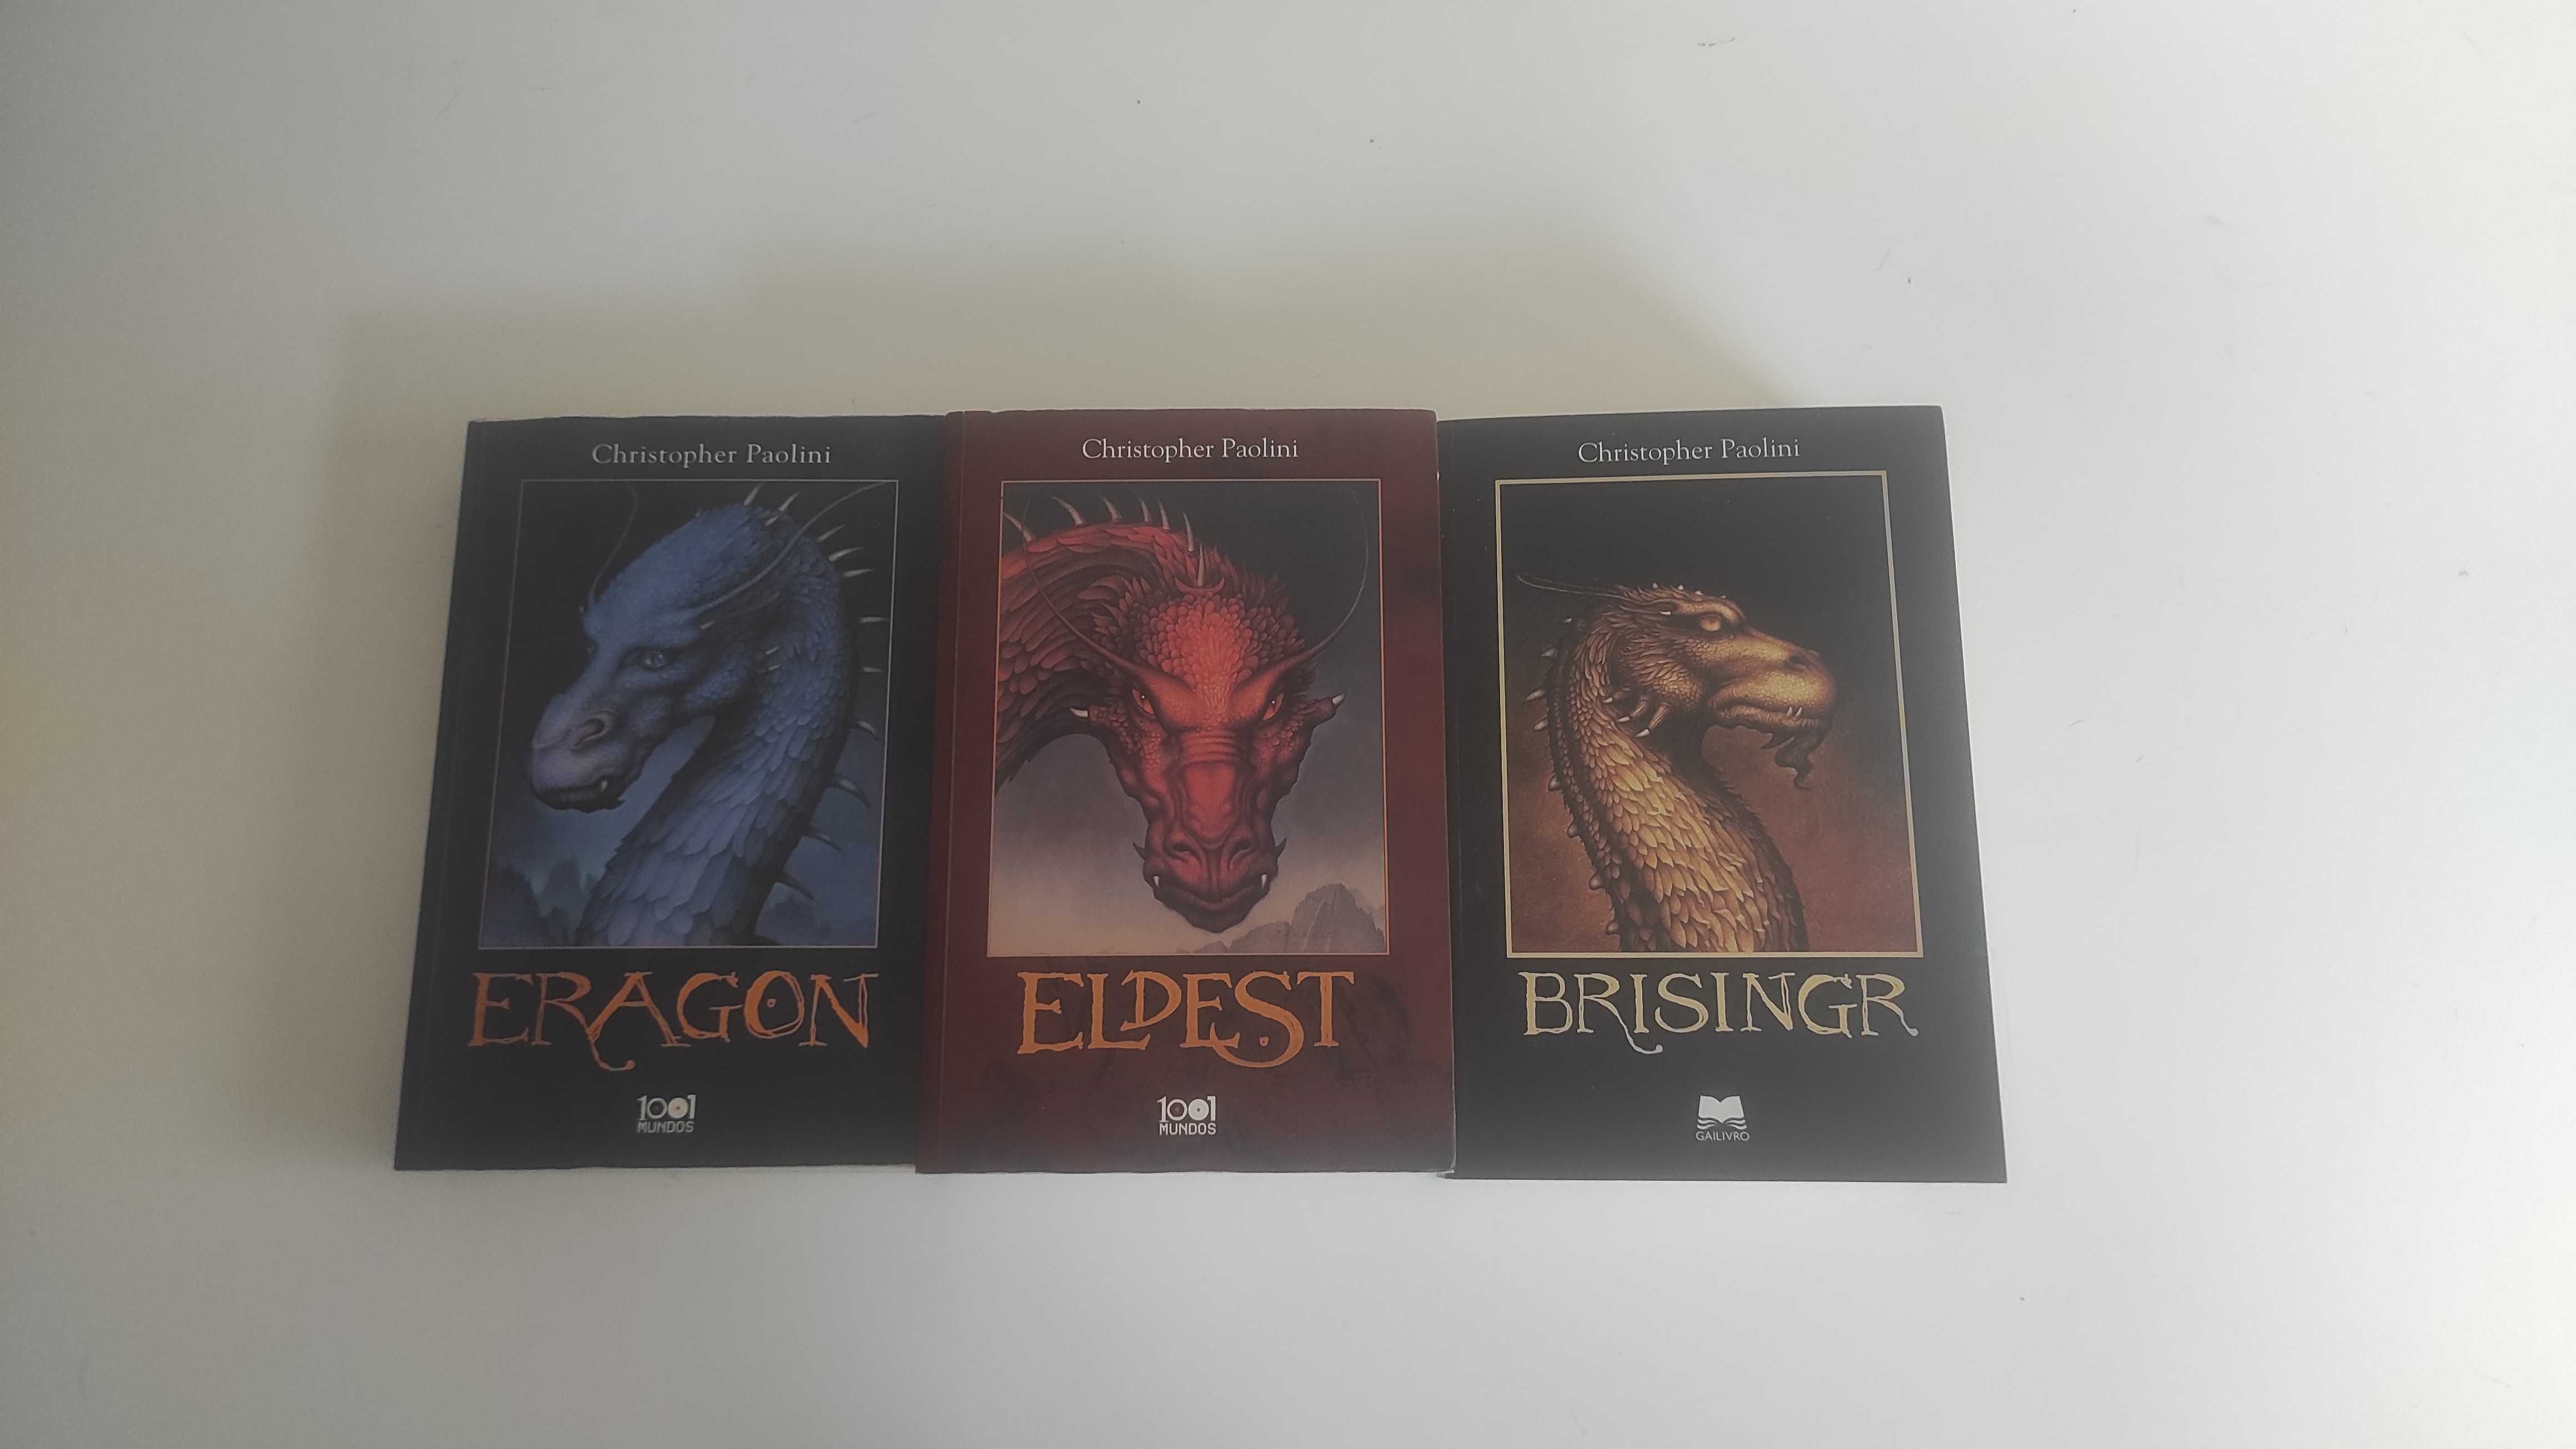 Triologia Eragon Saga Ciclo da Herança